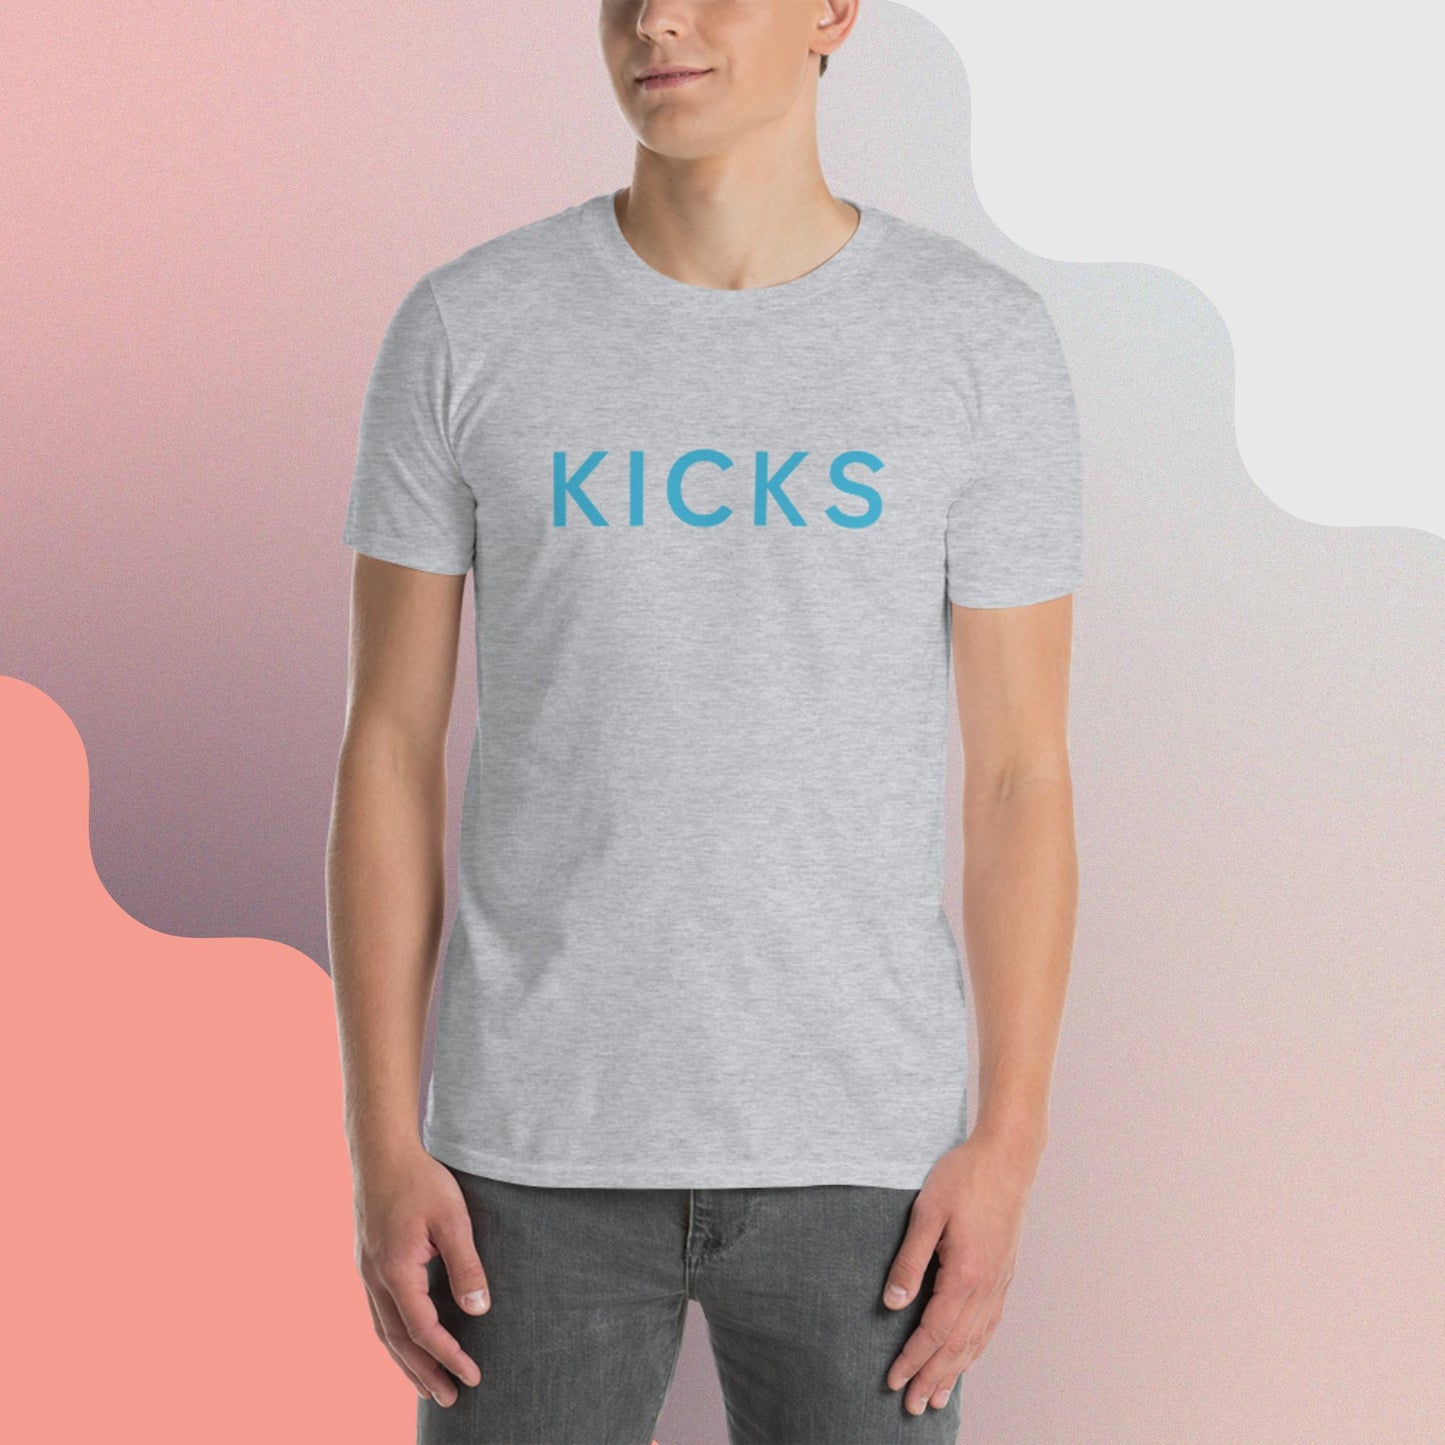 KICKS ...a Beat Short-Sleeve Unisex T-Shirt